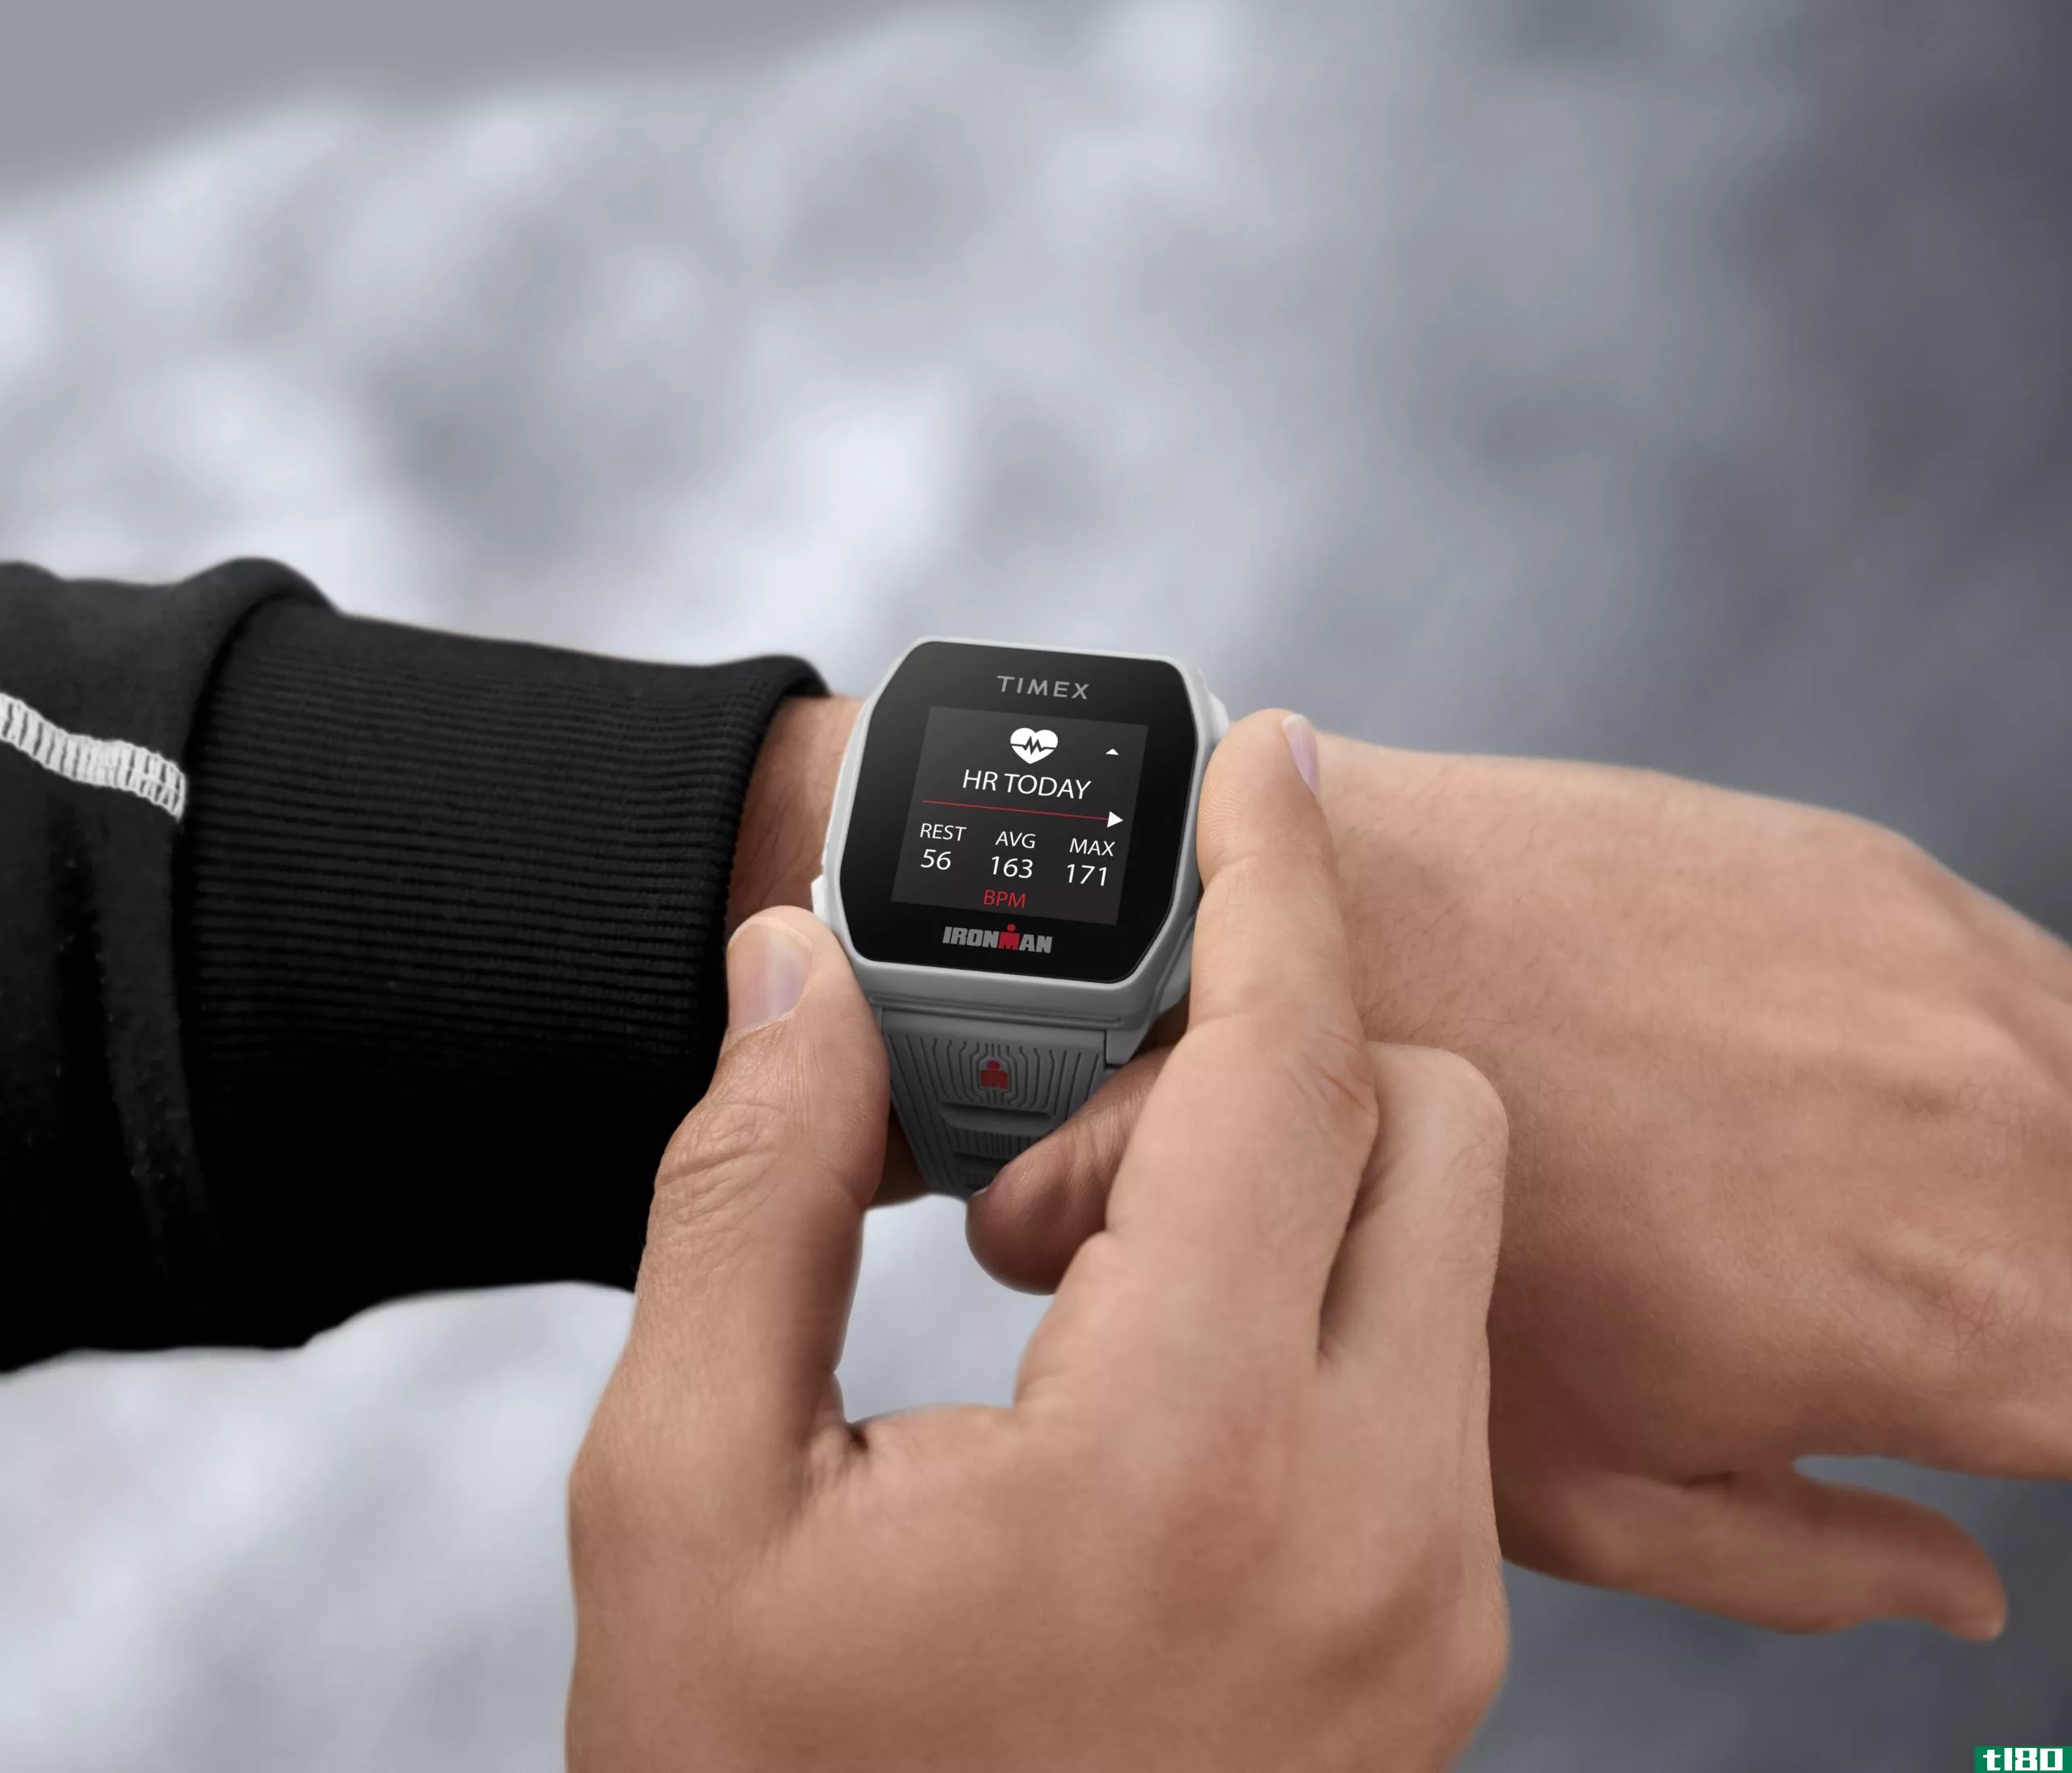 timex正在发布一款电池寿命为25天的gps智能手表